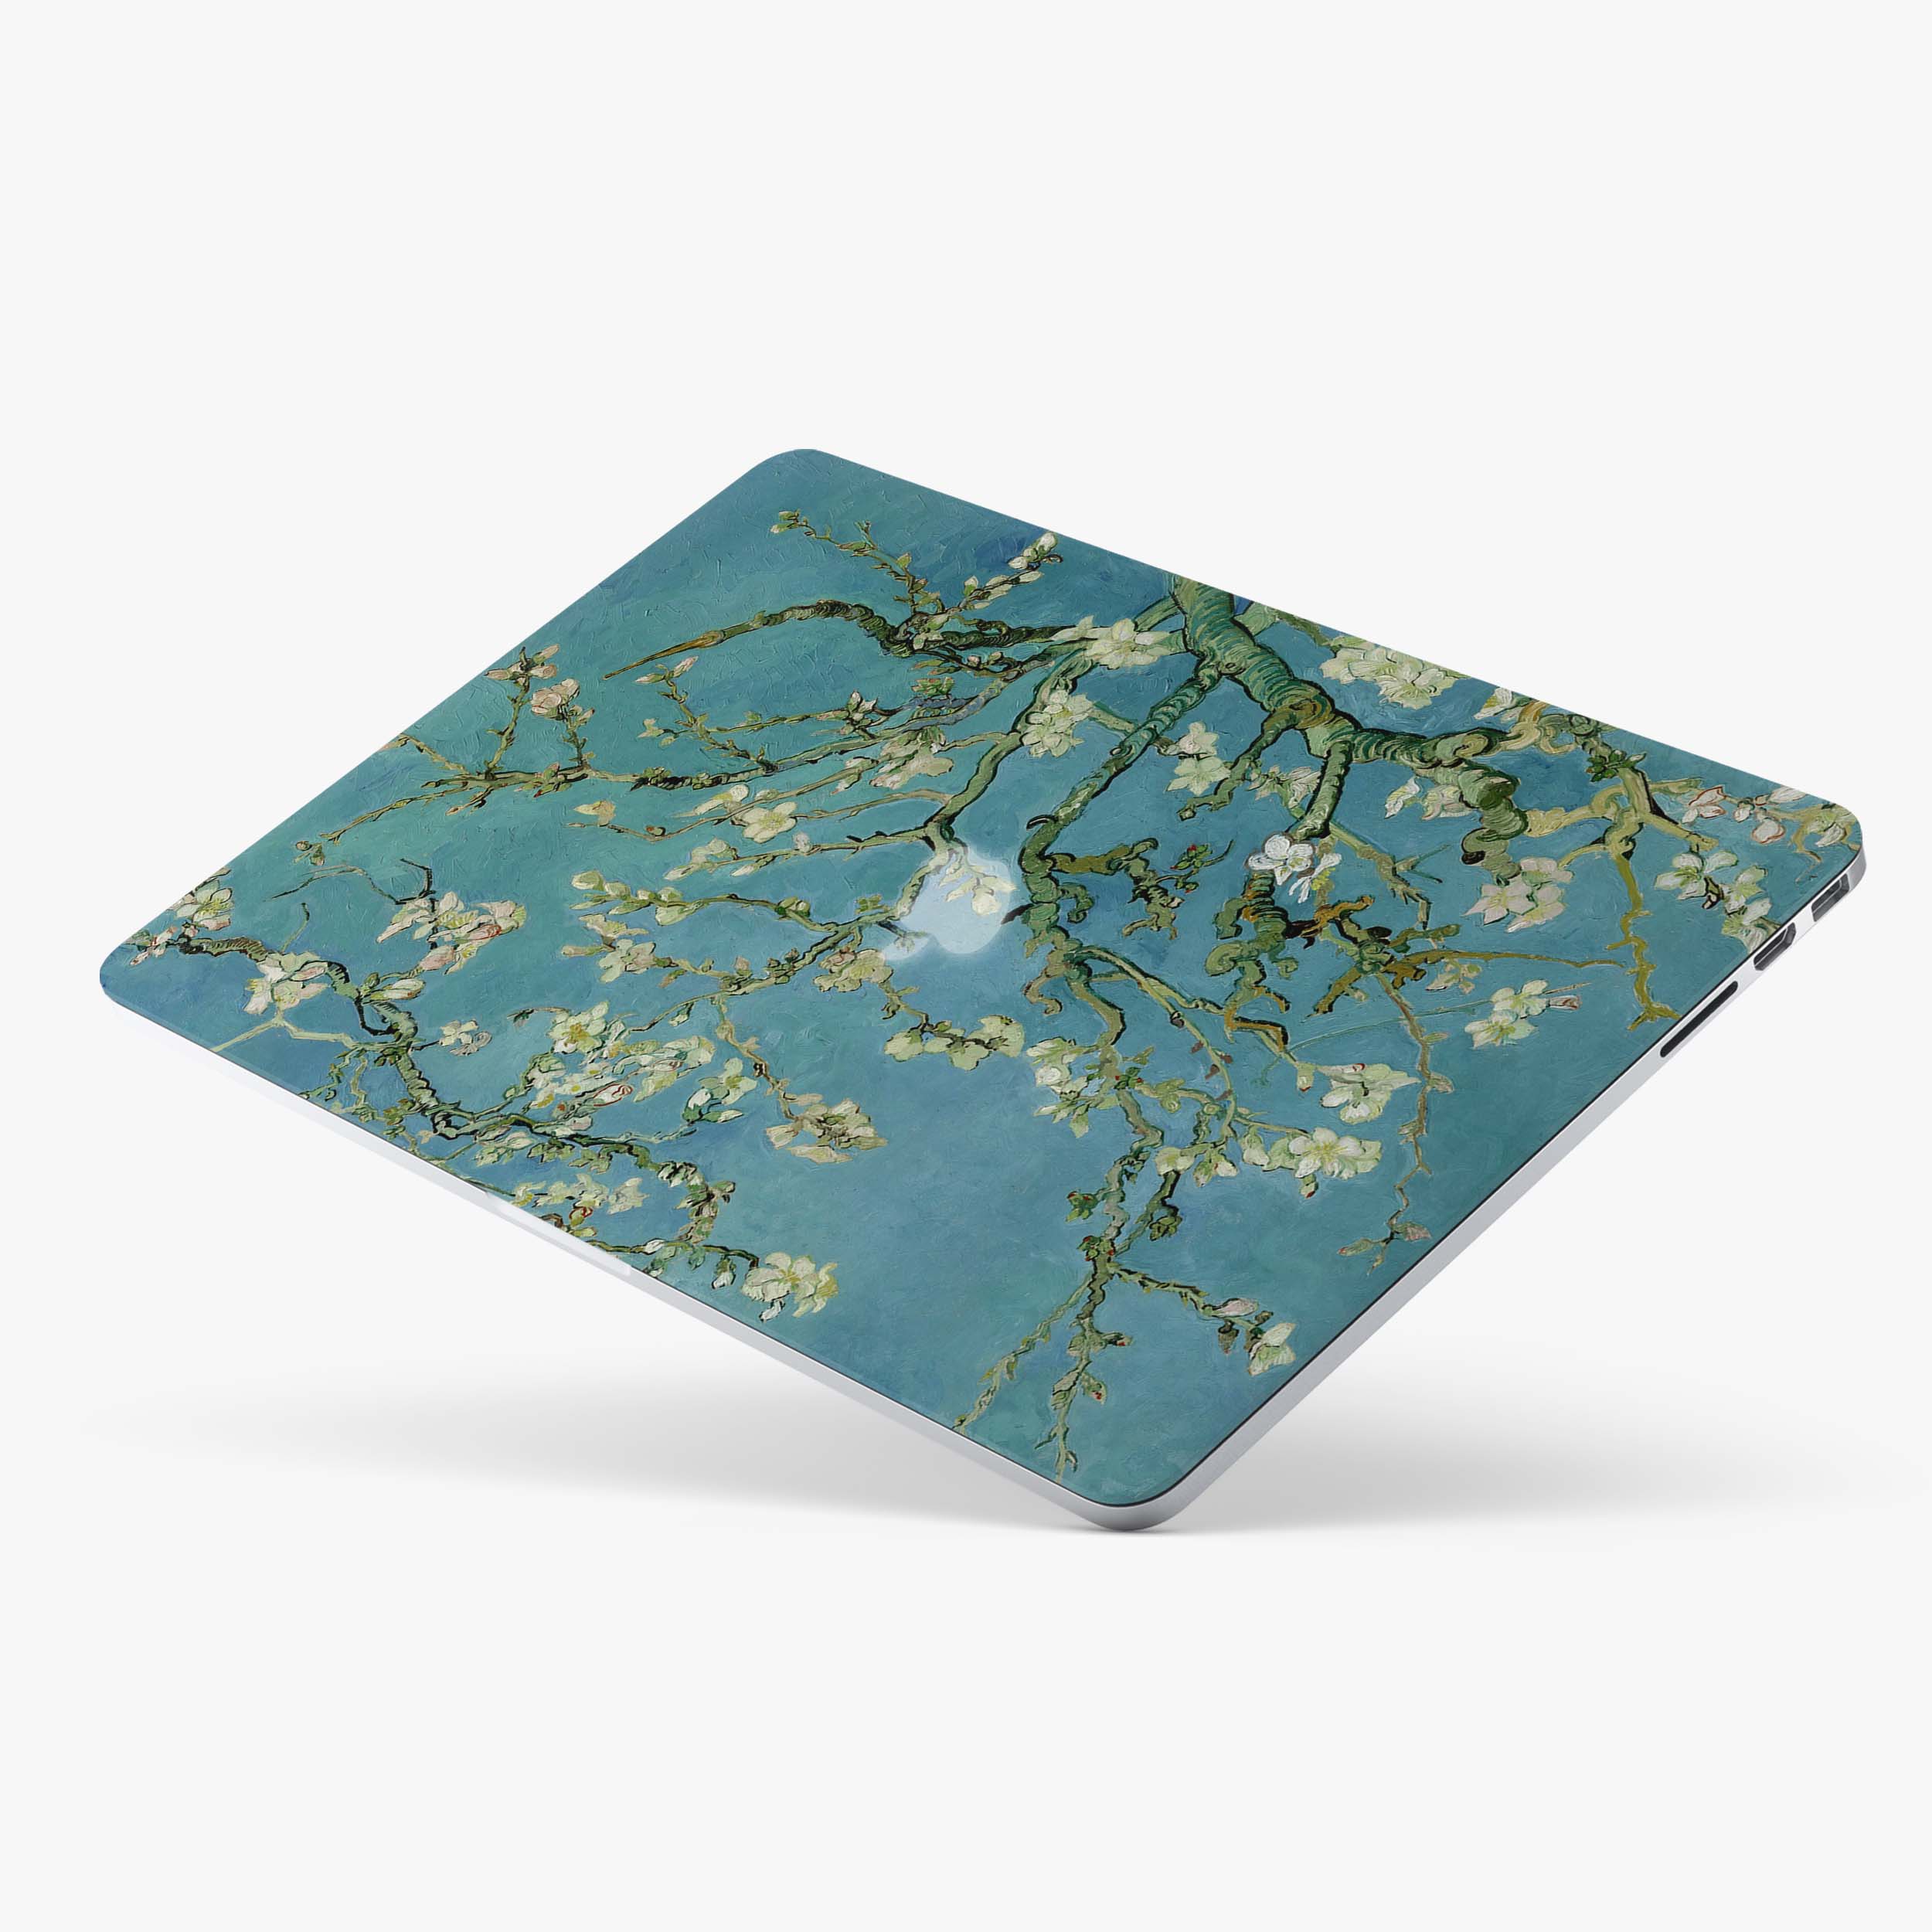 Custom Name Case Van Gogh Painting Aesthetic MacBook Case Wintersweet